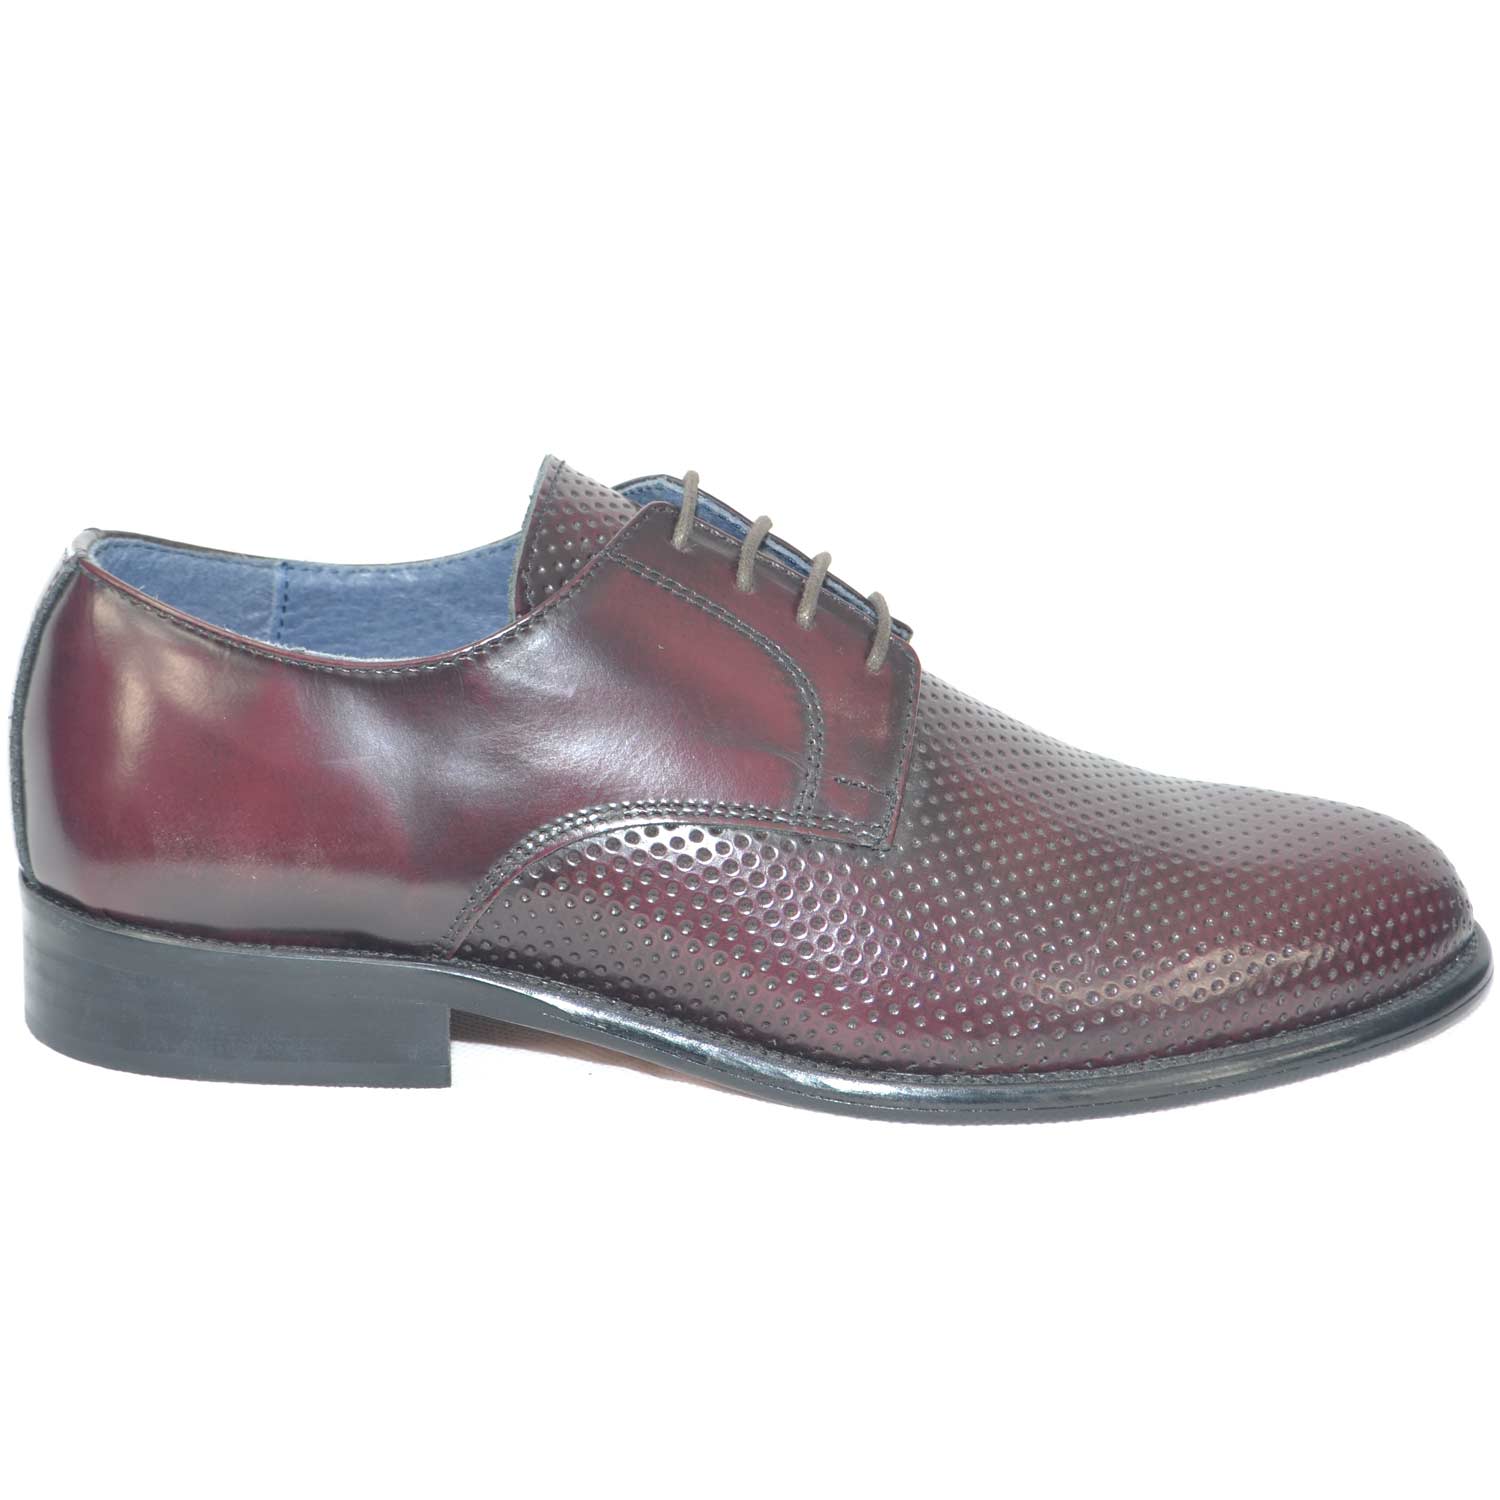 scarpe classiche uomo art.sc4402 vera pelle bordeaux made in italy microforata fondo cuoio.